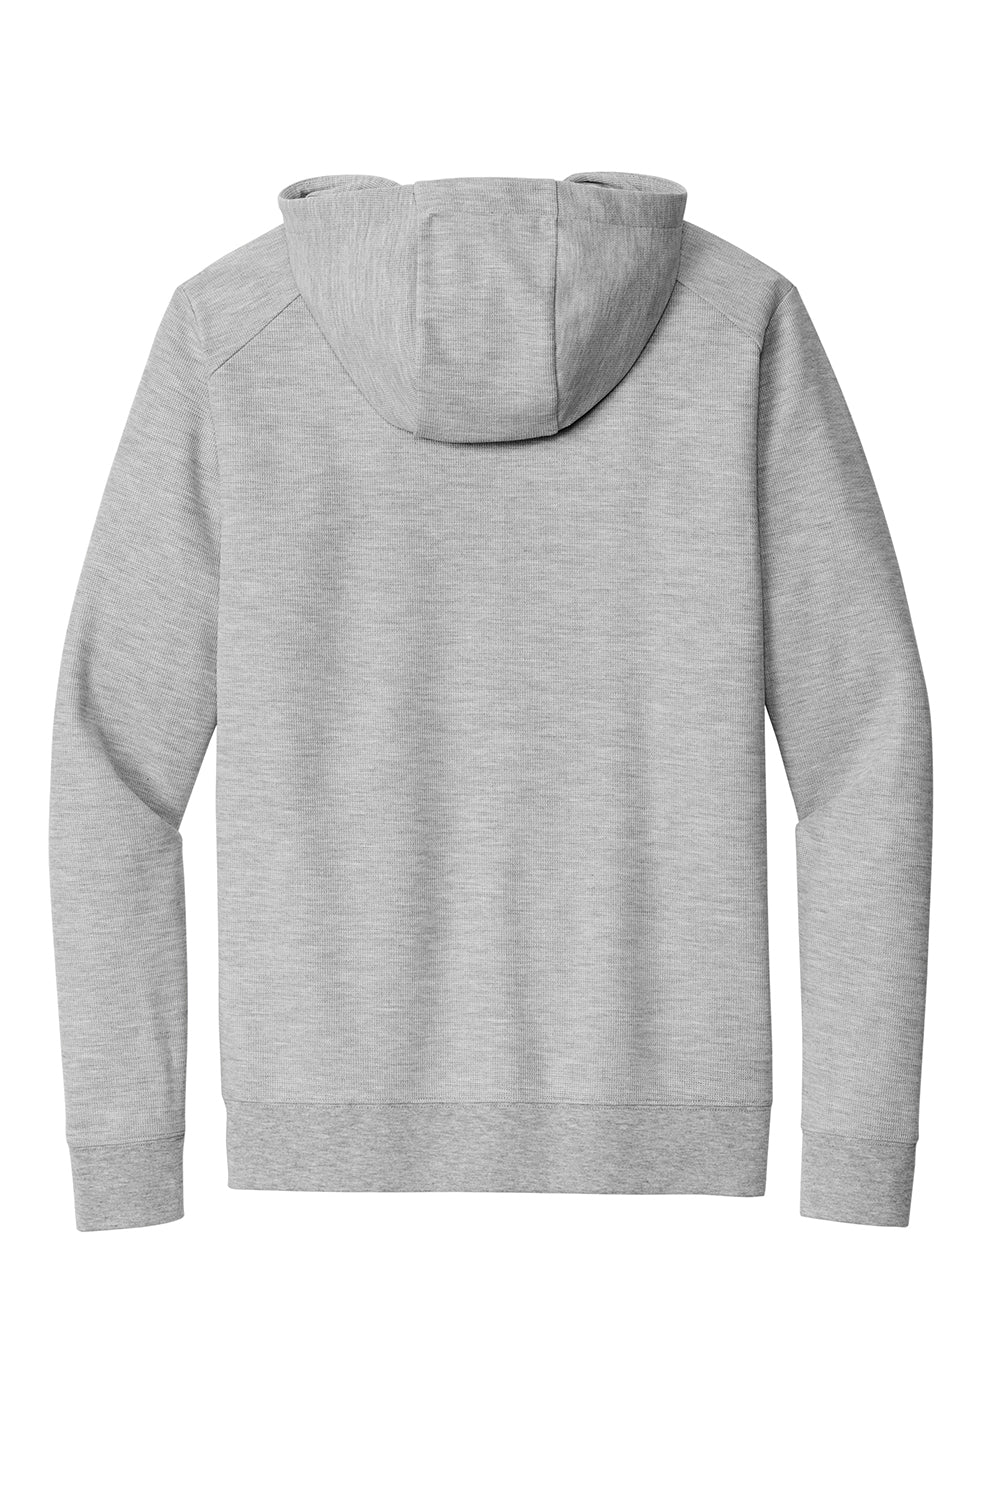 Ogio OG162 Mens Revive Full Zip Hooded Sweatshirt Hoodie Heather Light Grey Flat Back